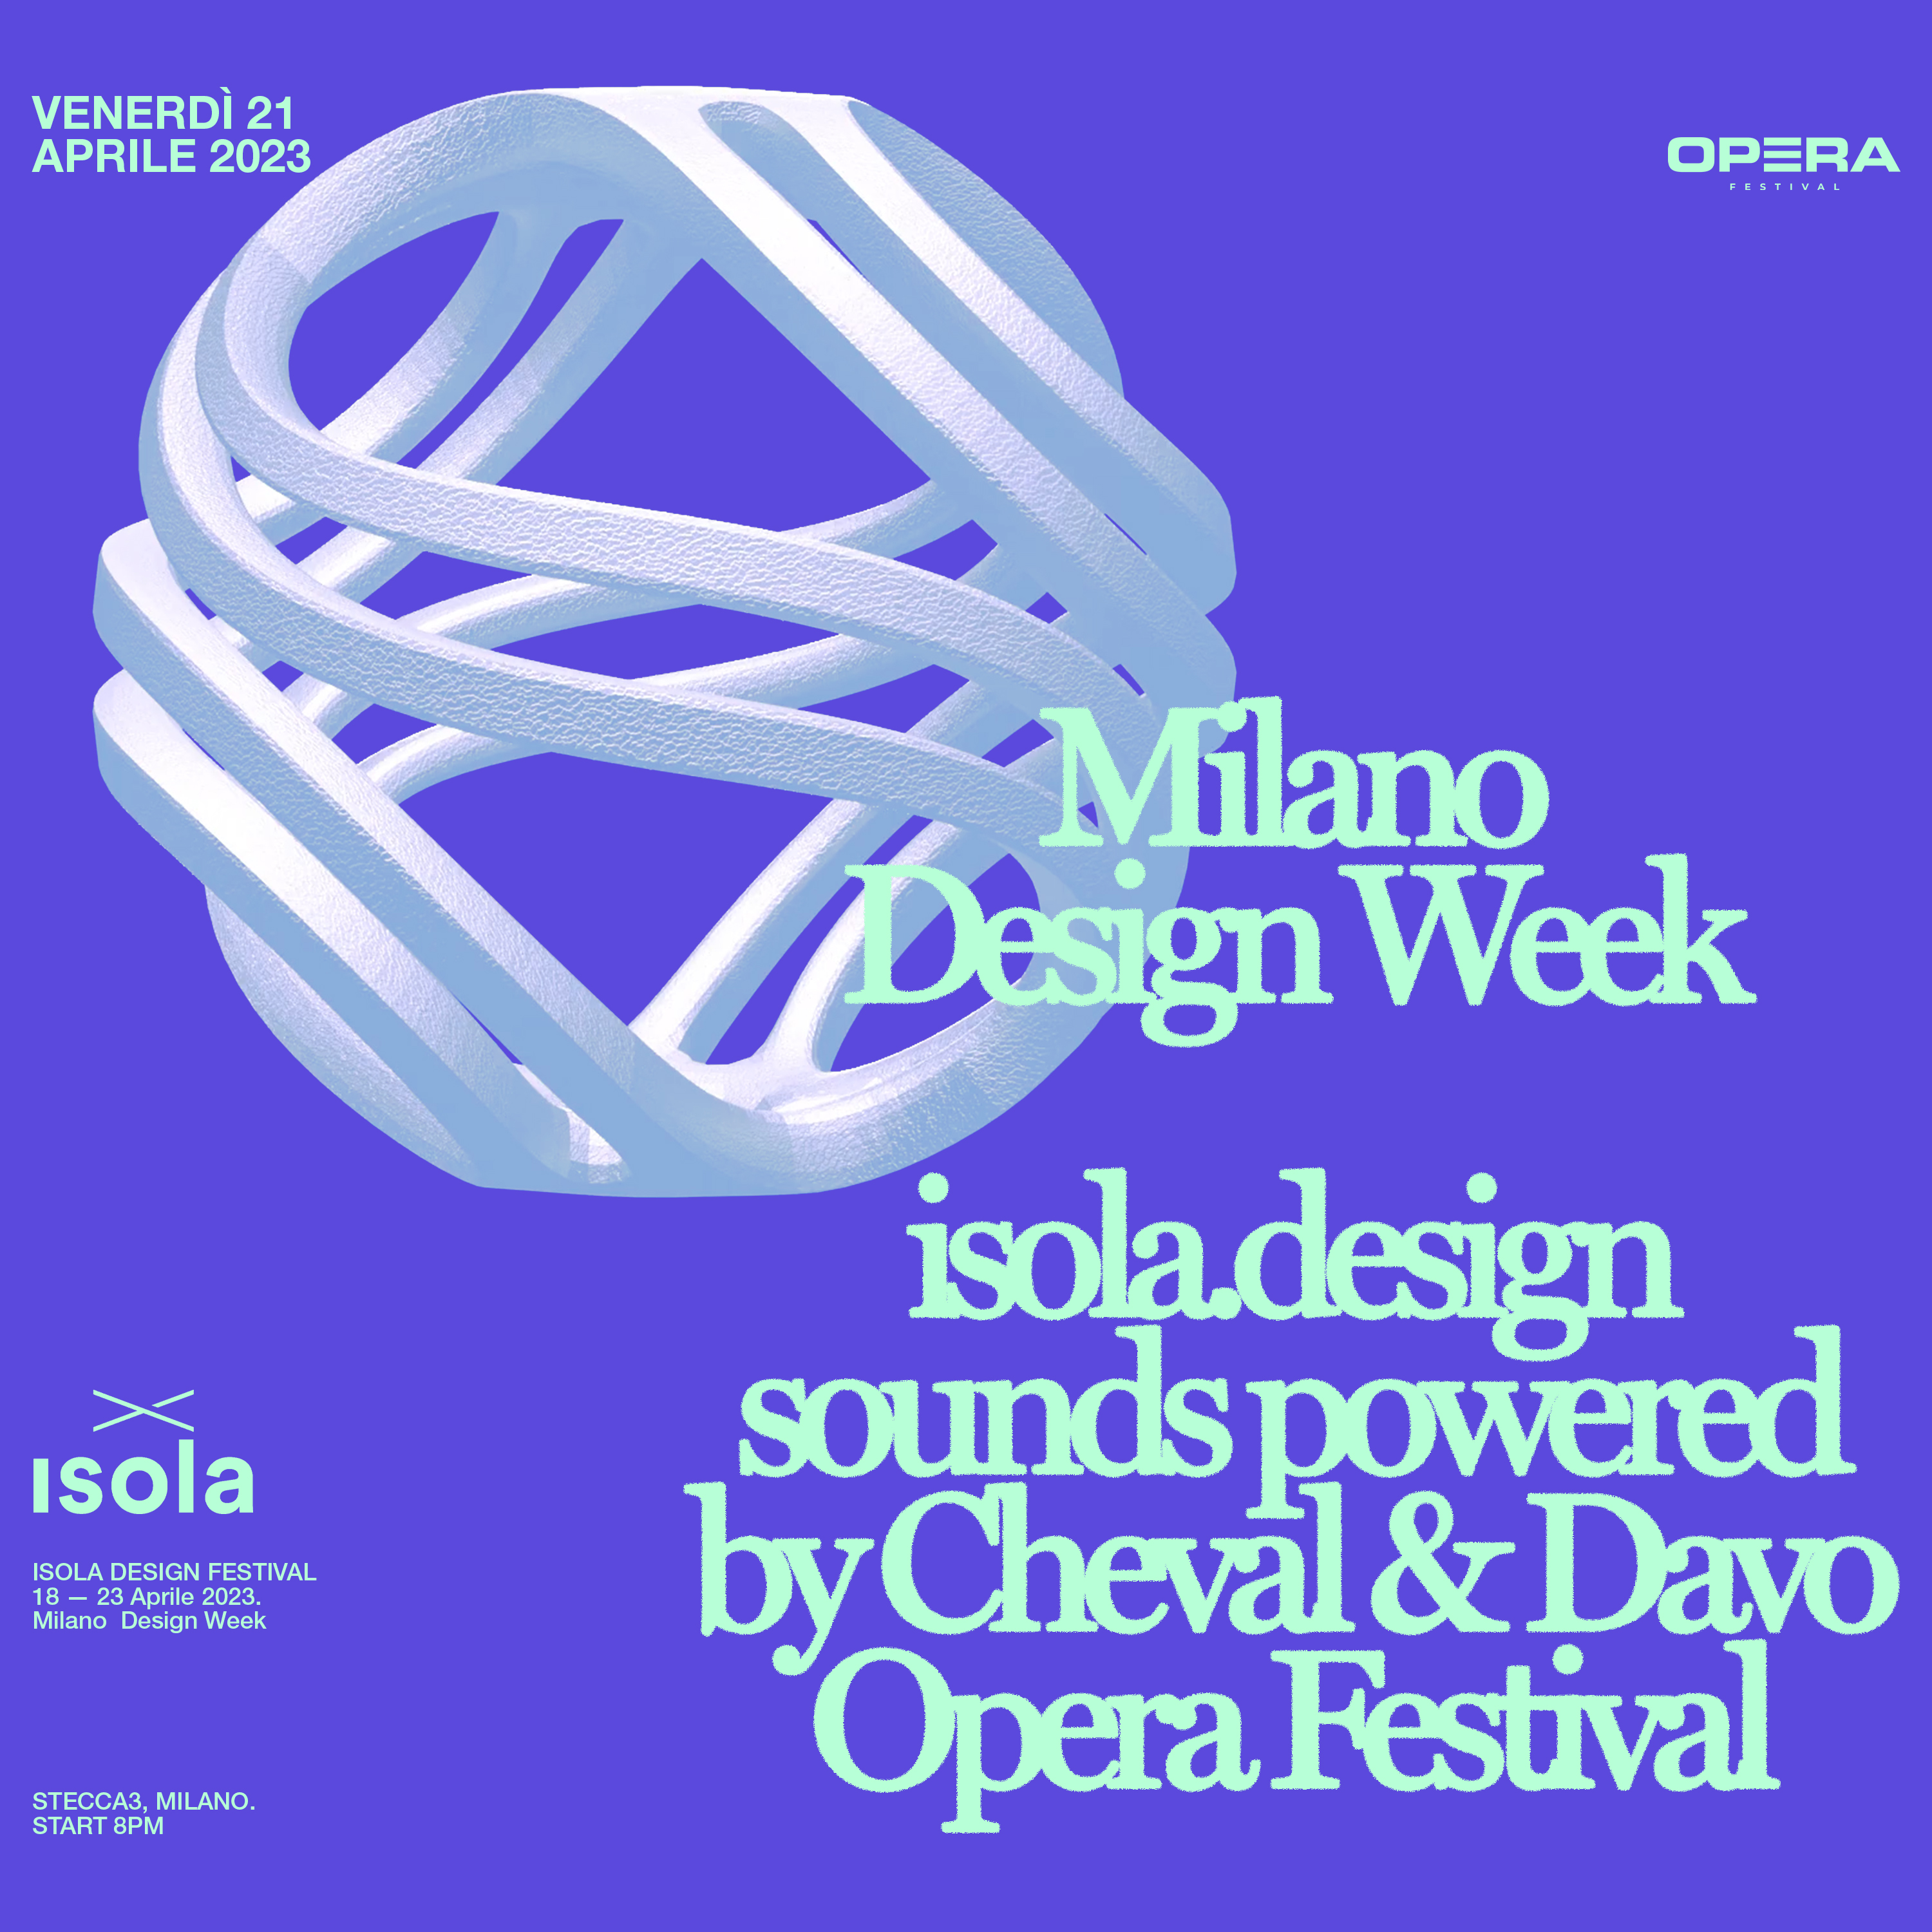 Isola Design Festival 2023, Festivals in Italy